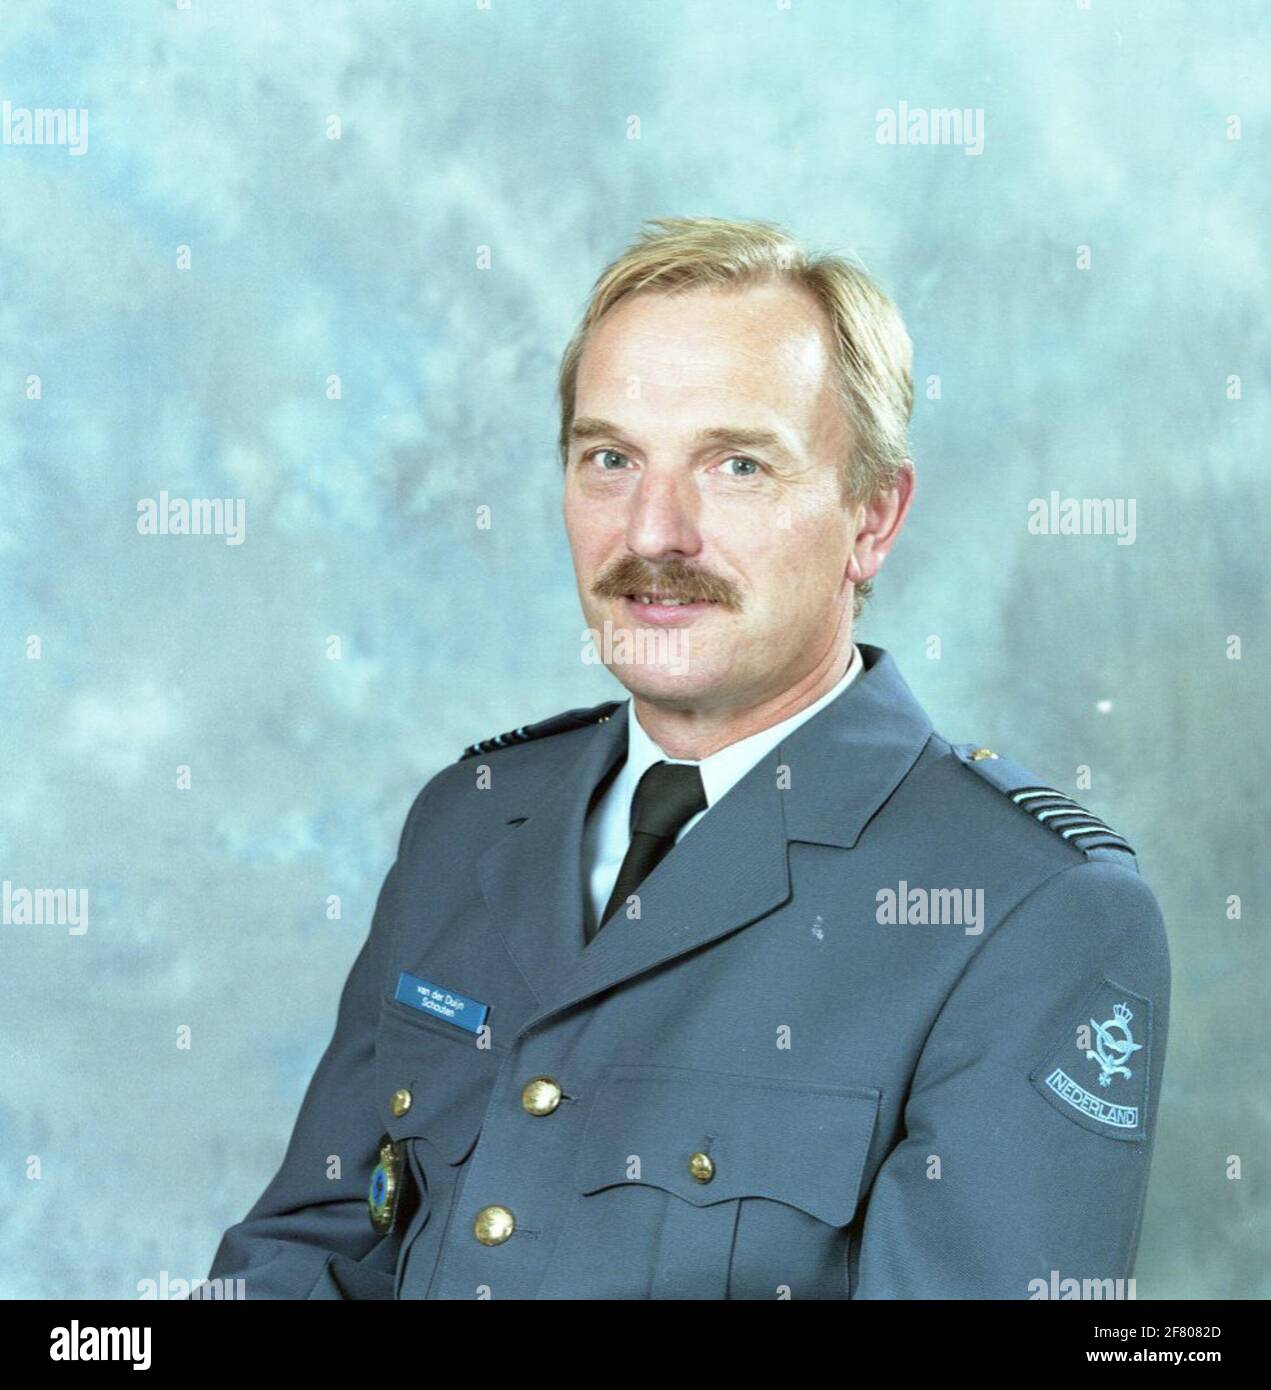 Lieutenant Colonel D.J. Van der Duijn Schouten, Commander Air Force Meteo Group. Stock Photo